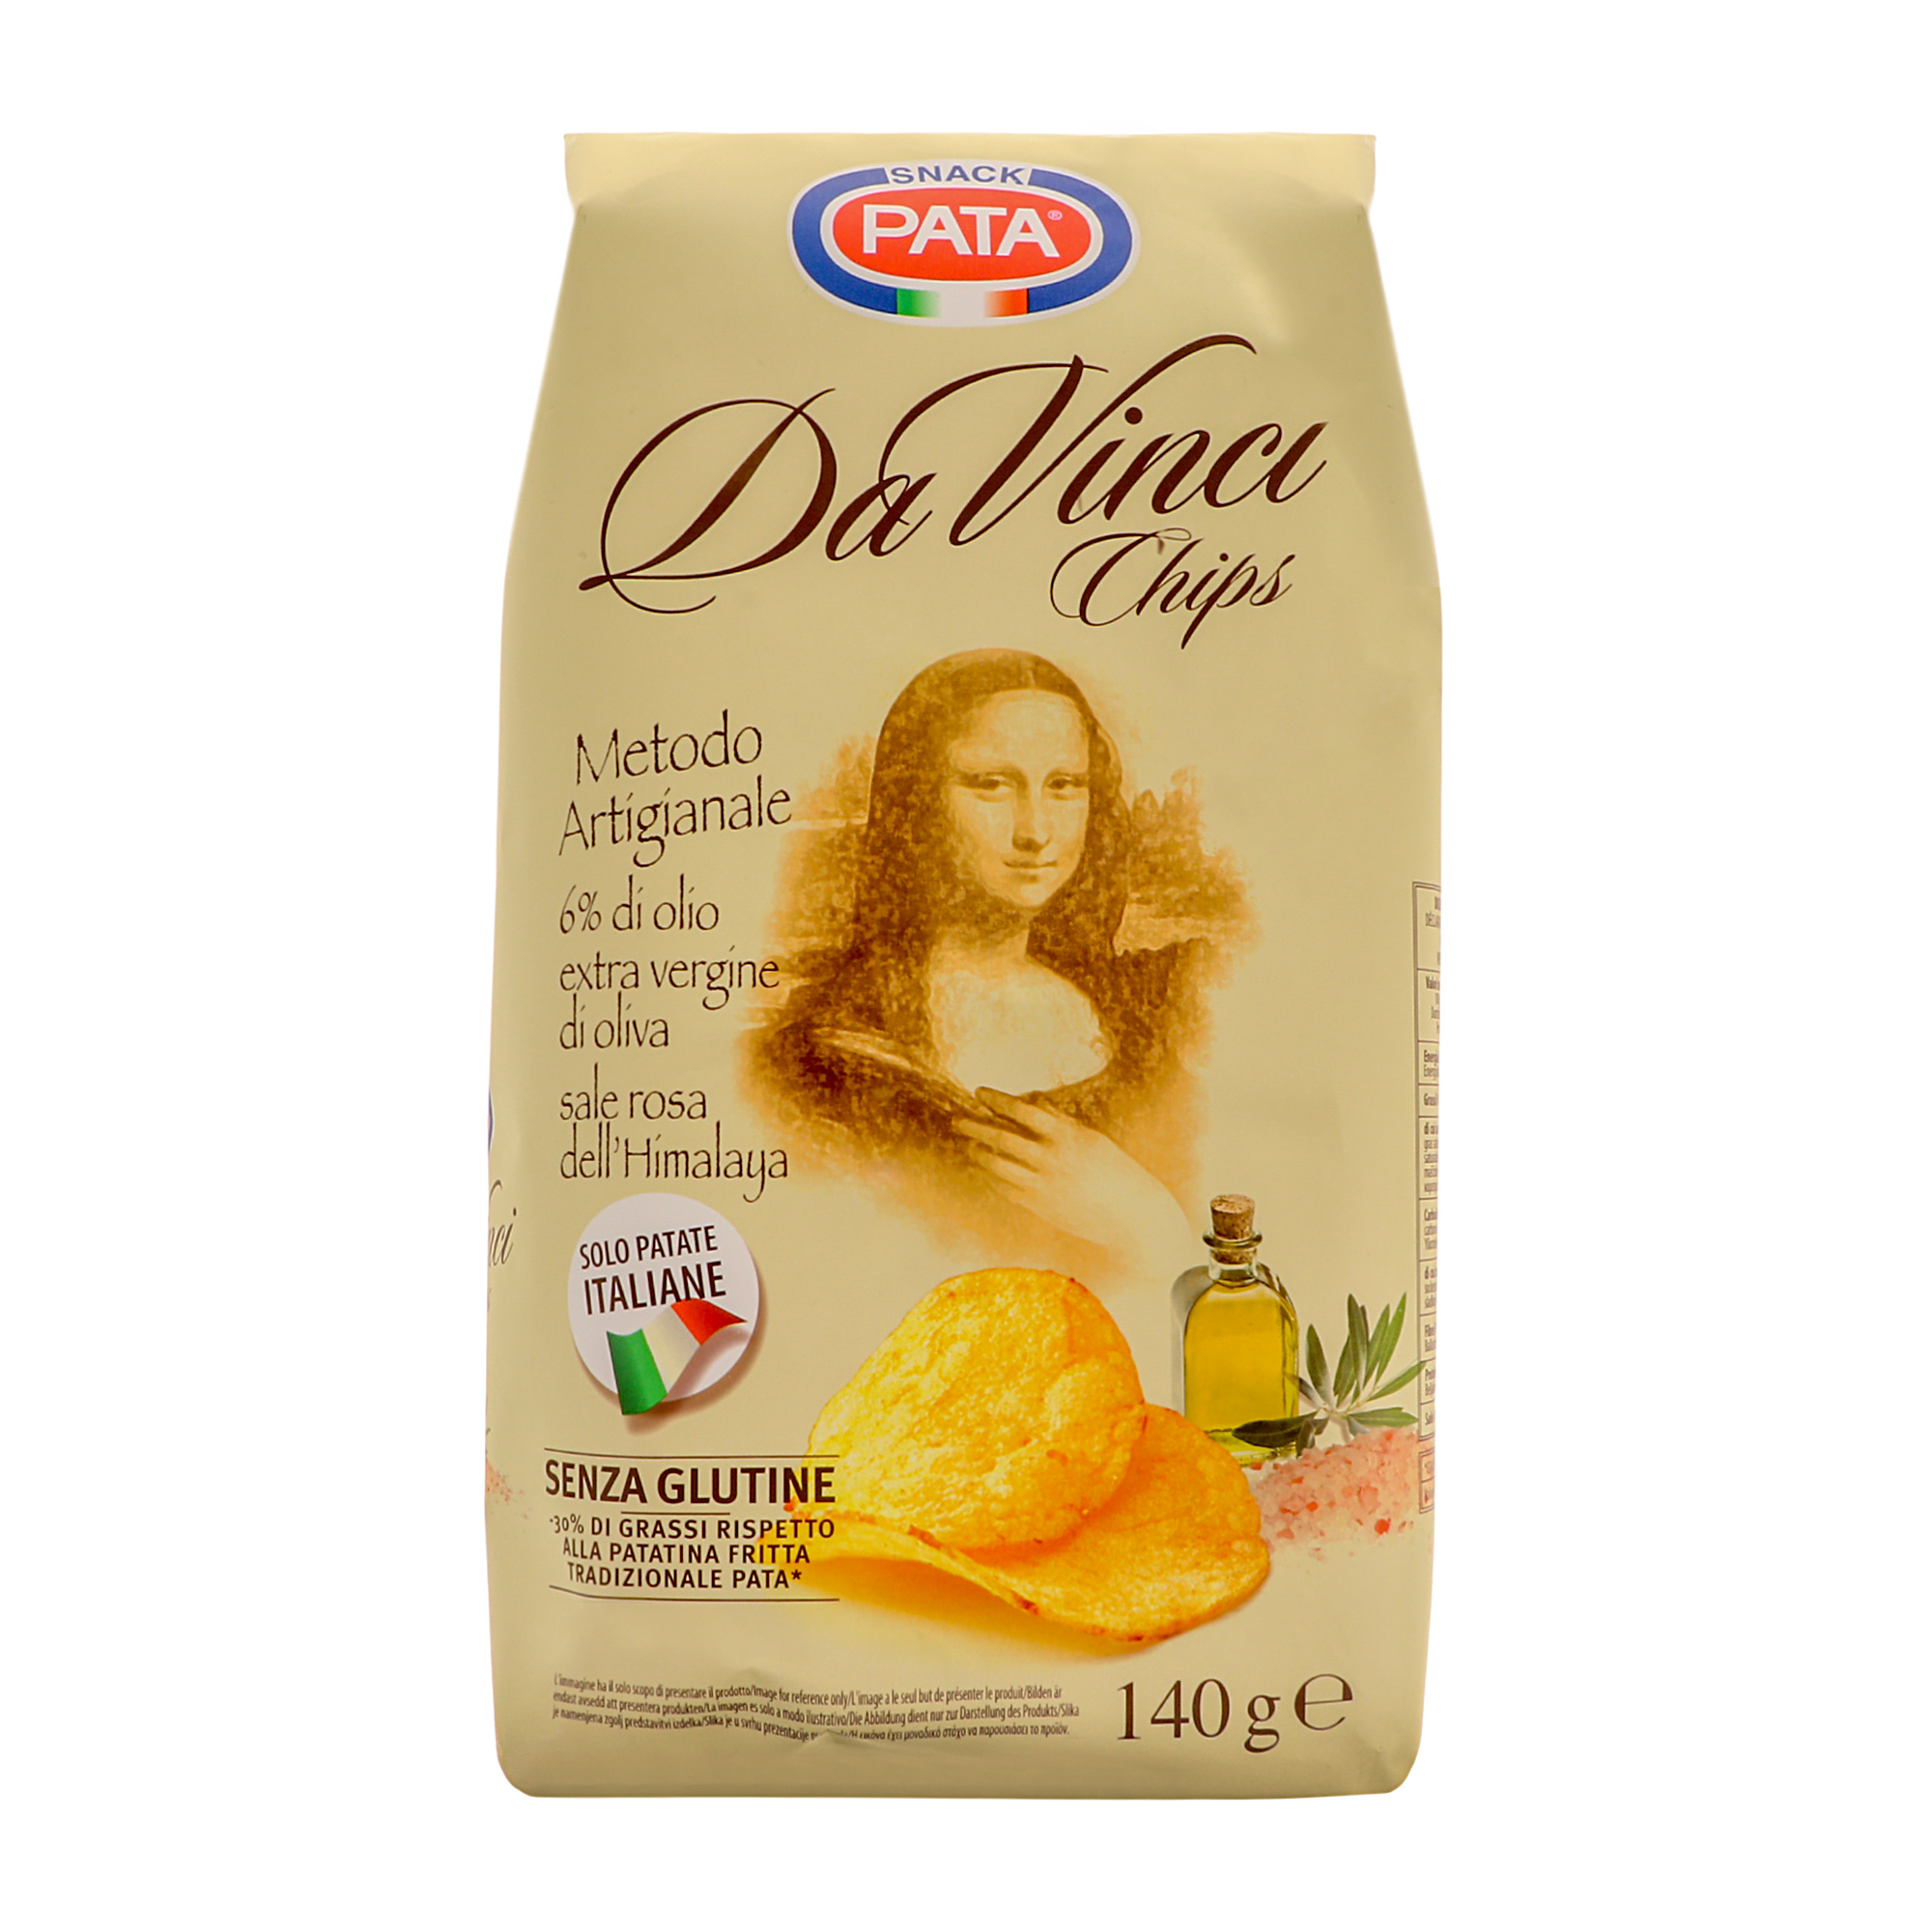 Чипсы картофельные Pata Da Vinci 140 г чипсы московский картофель в ломтиках со вкусом сыра 70 гр